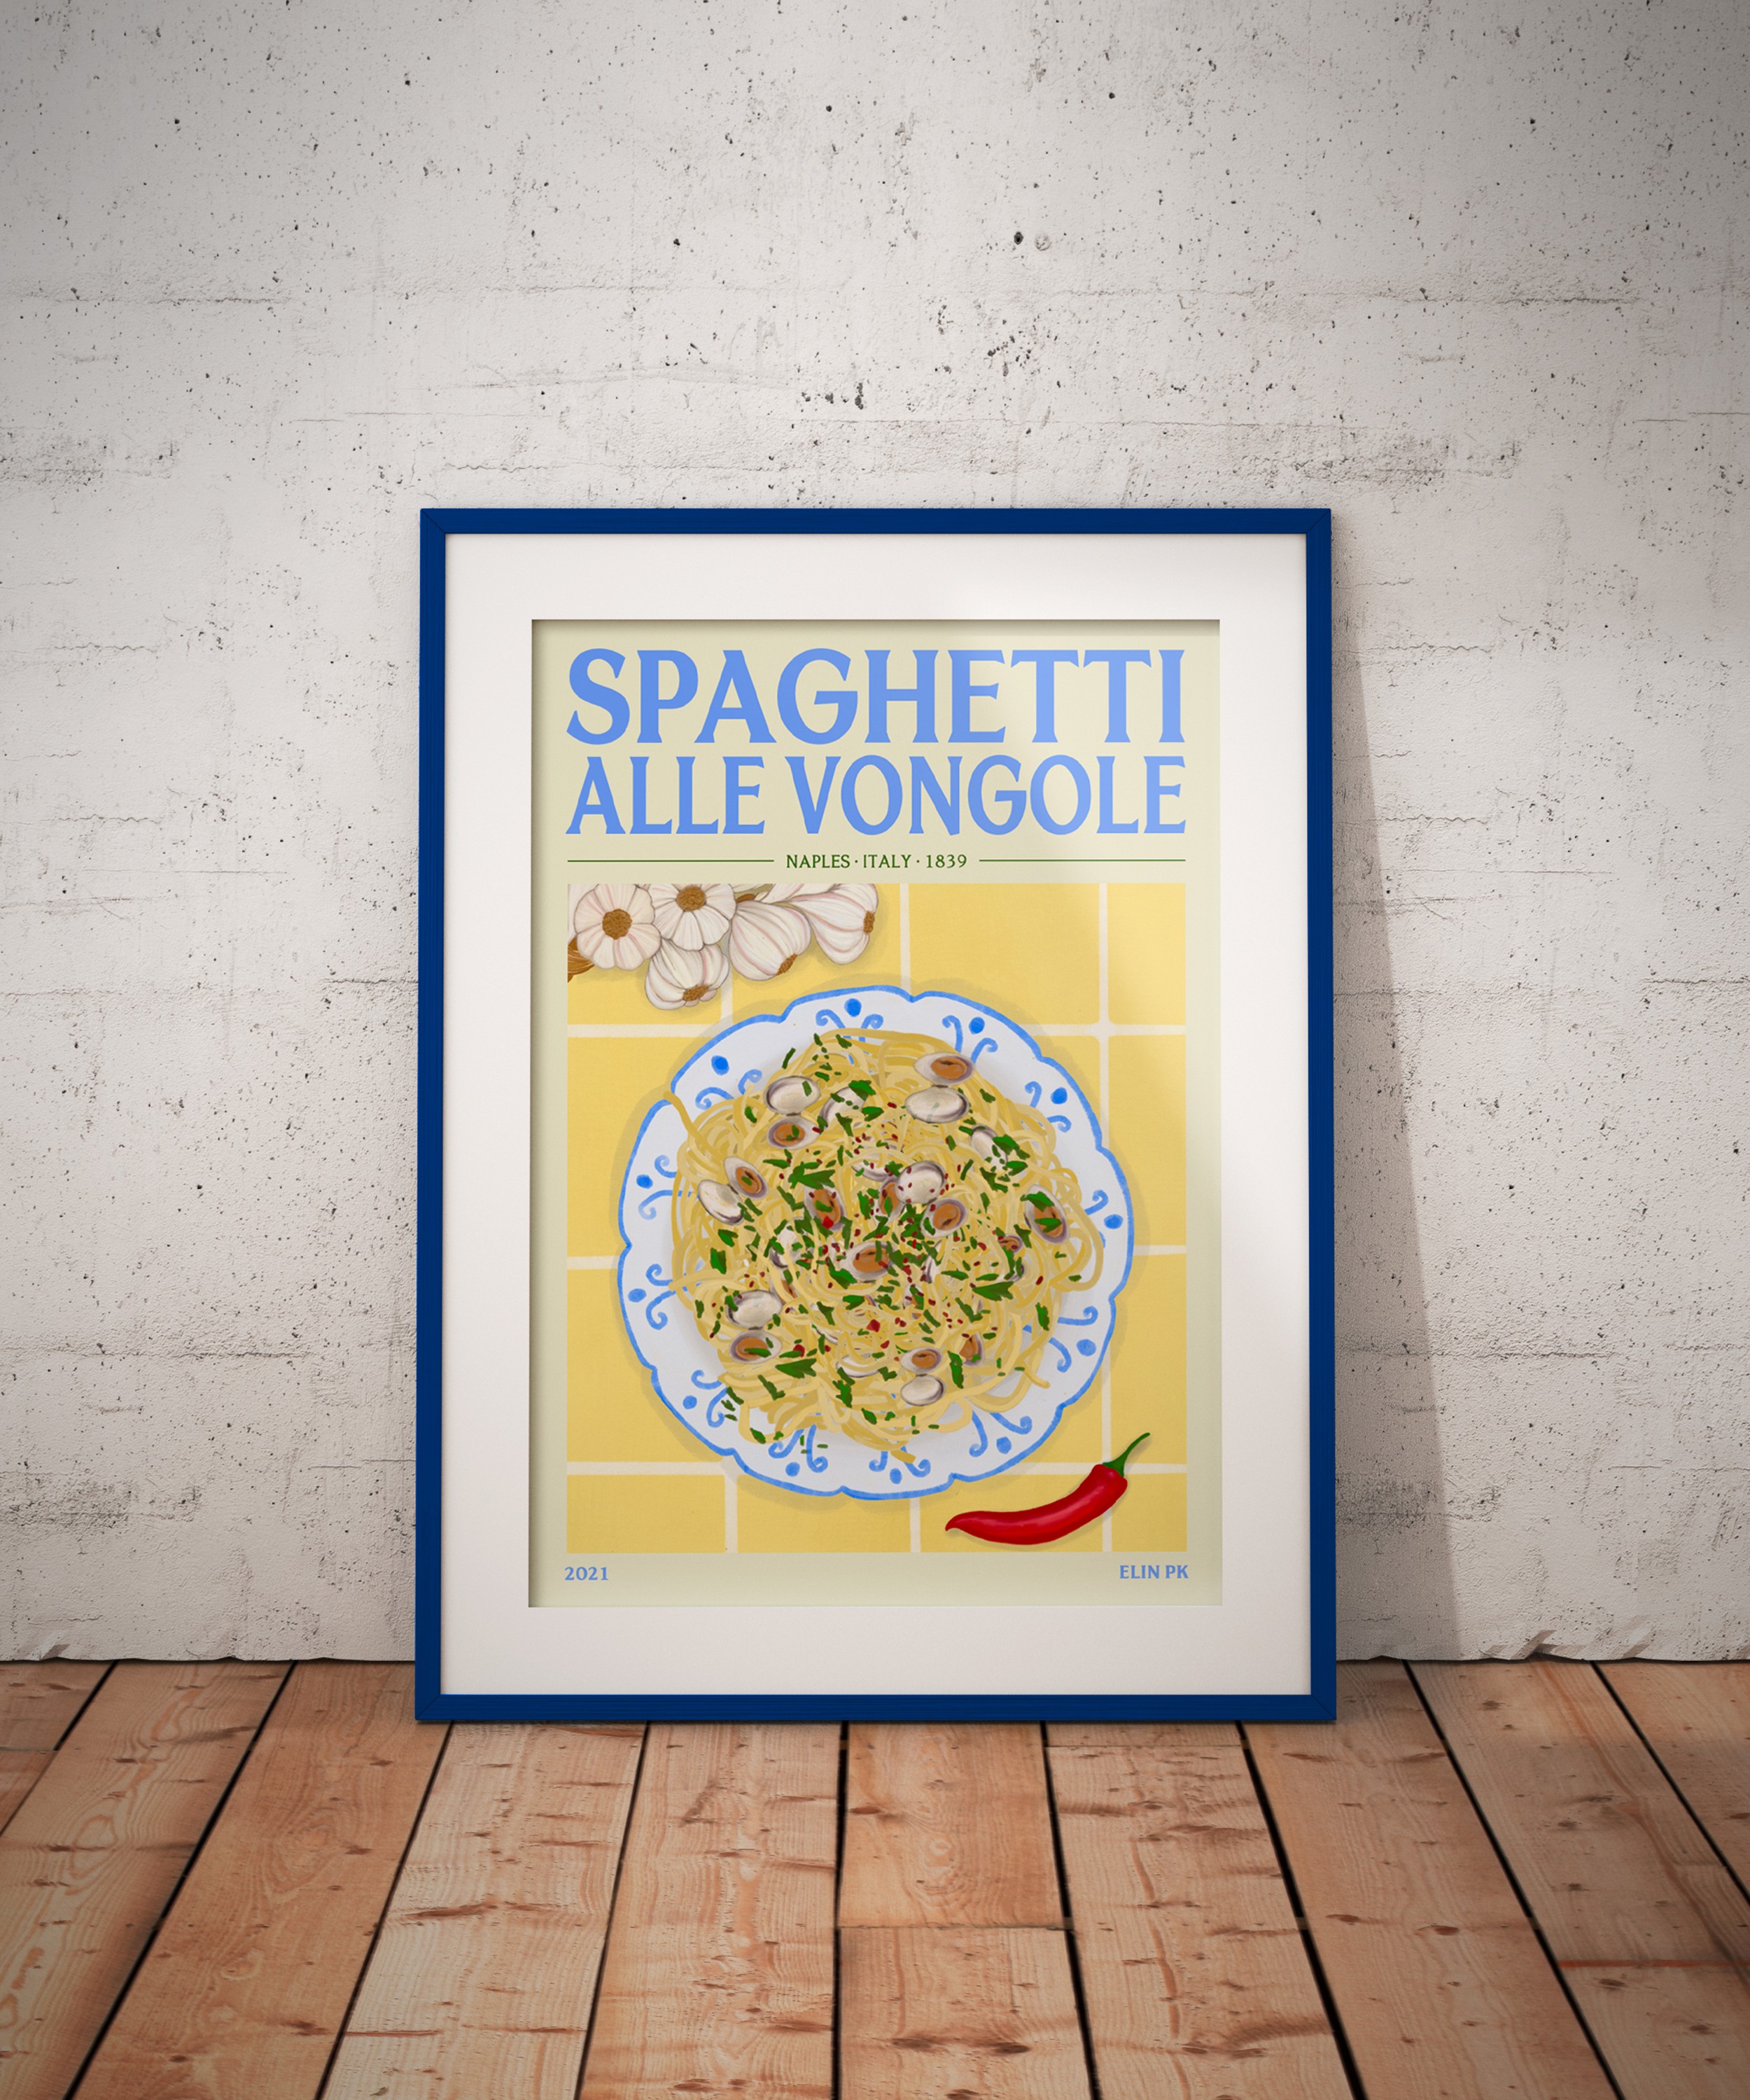 Pasta type with name poster of Italian macaroni